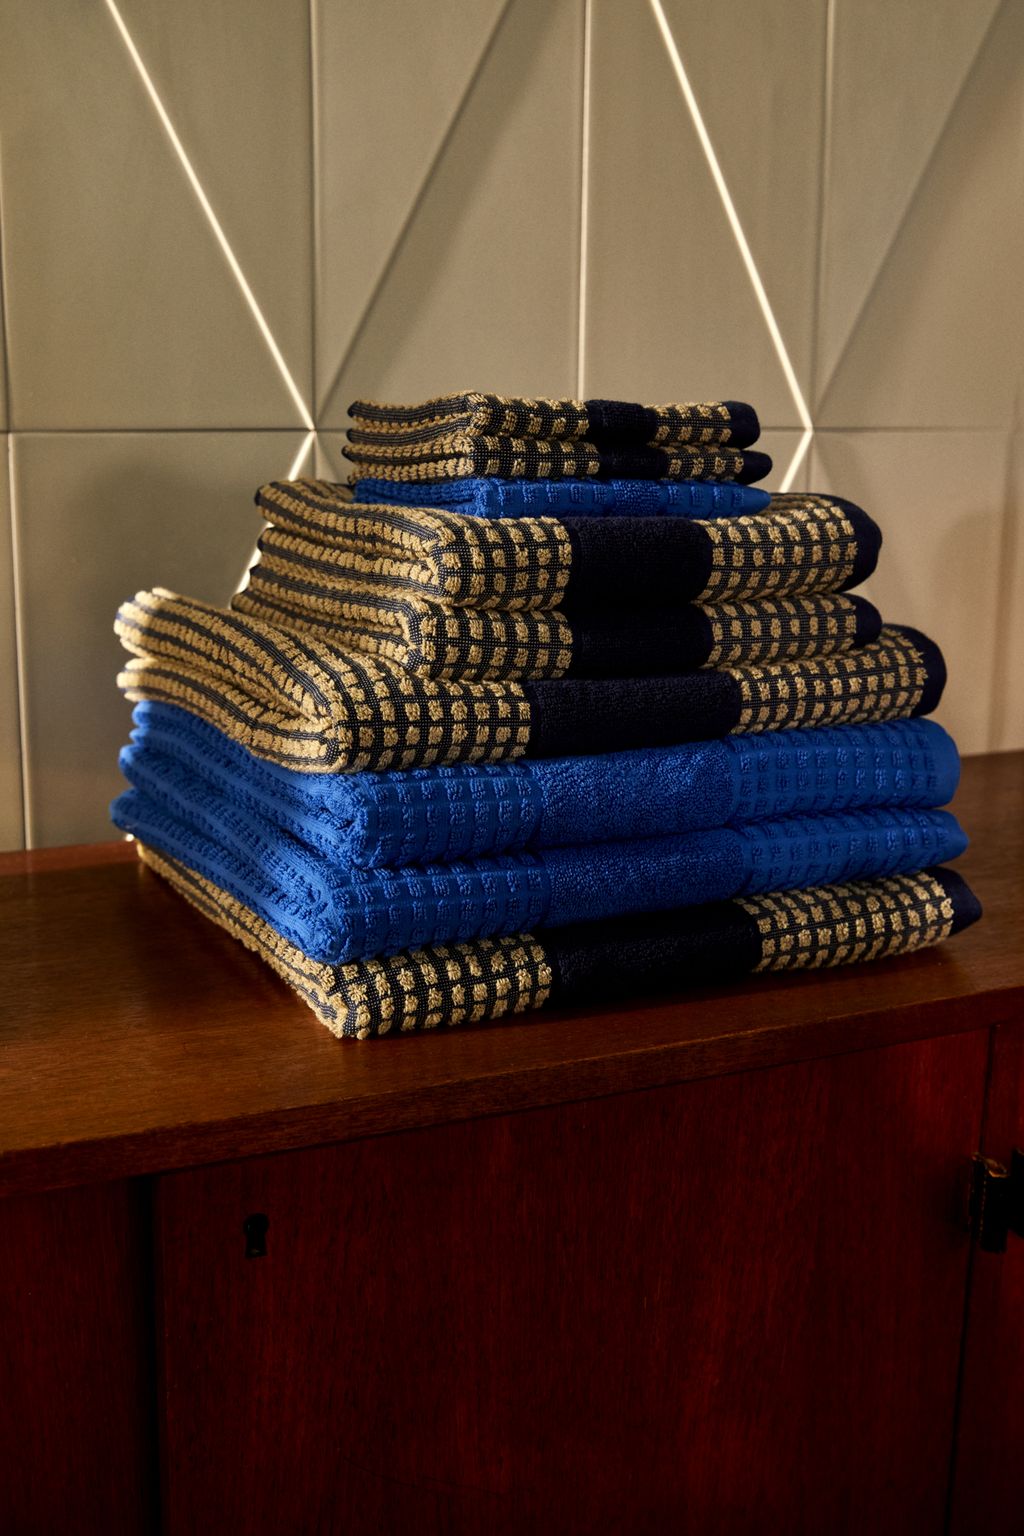 Juna Controleer handdoek 70 x140 cm, donkerblauw/zand